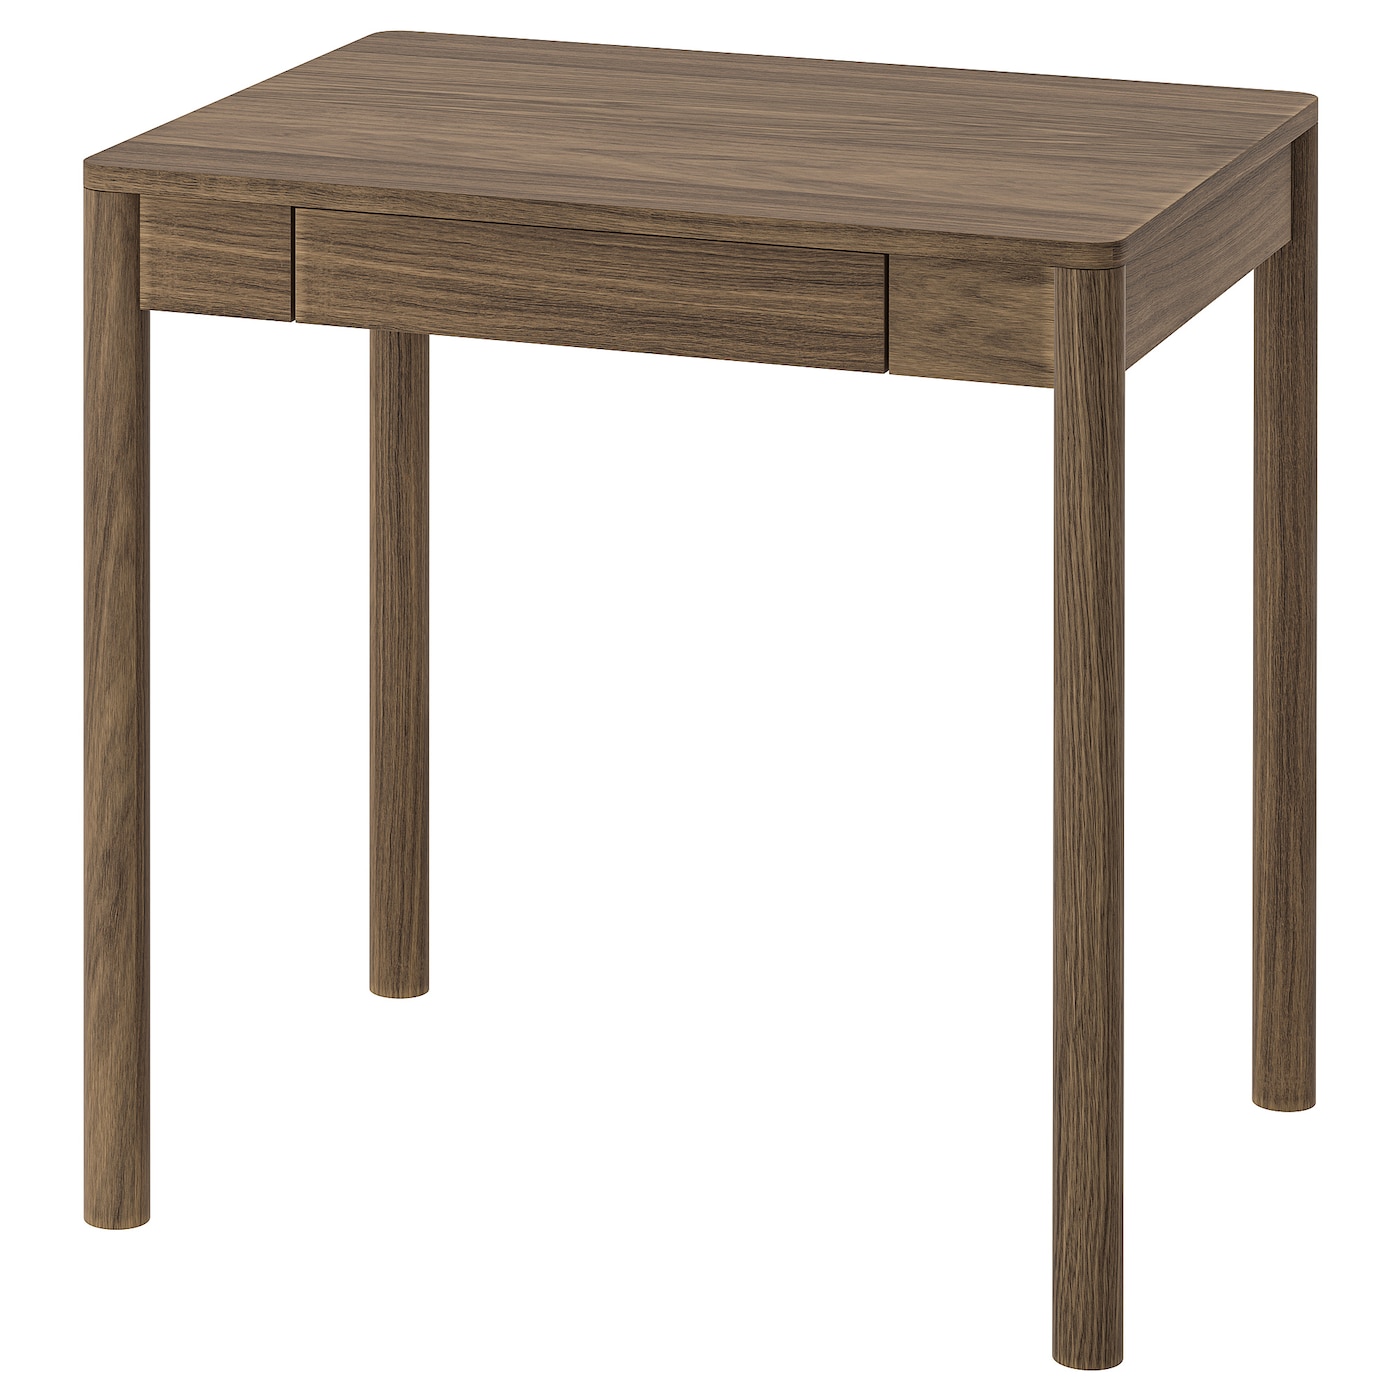 Письменный стол - IKEA TONSTAD, 75x75 см, коричневый дубовый шпон, ТОНСТАД ИКЕА